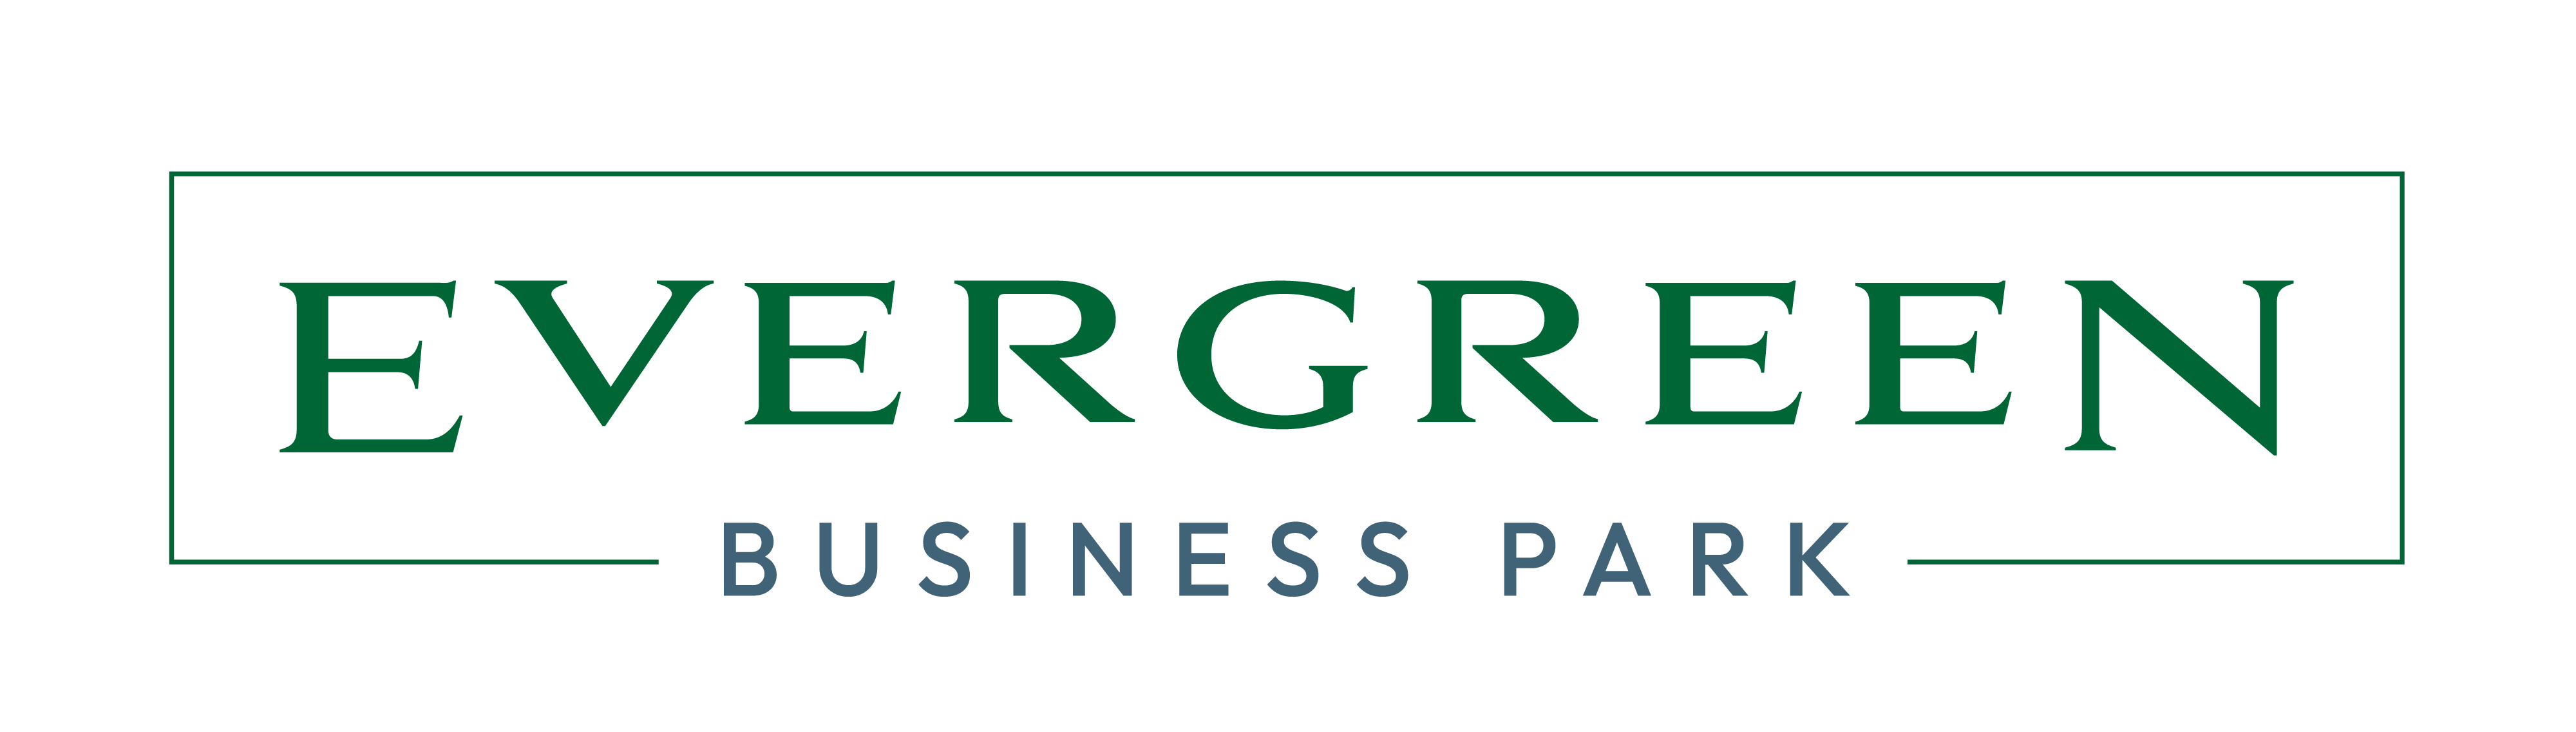 Evergreen Business Park